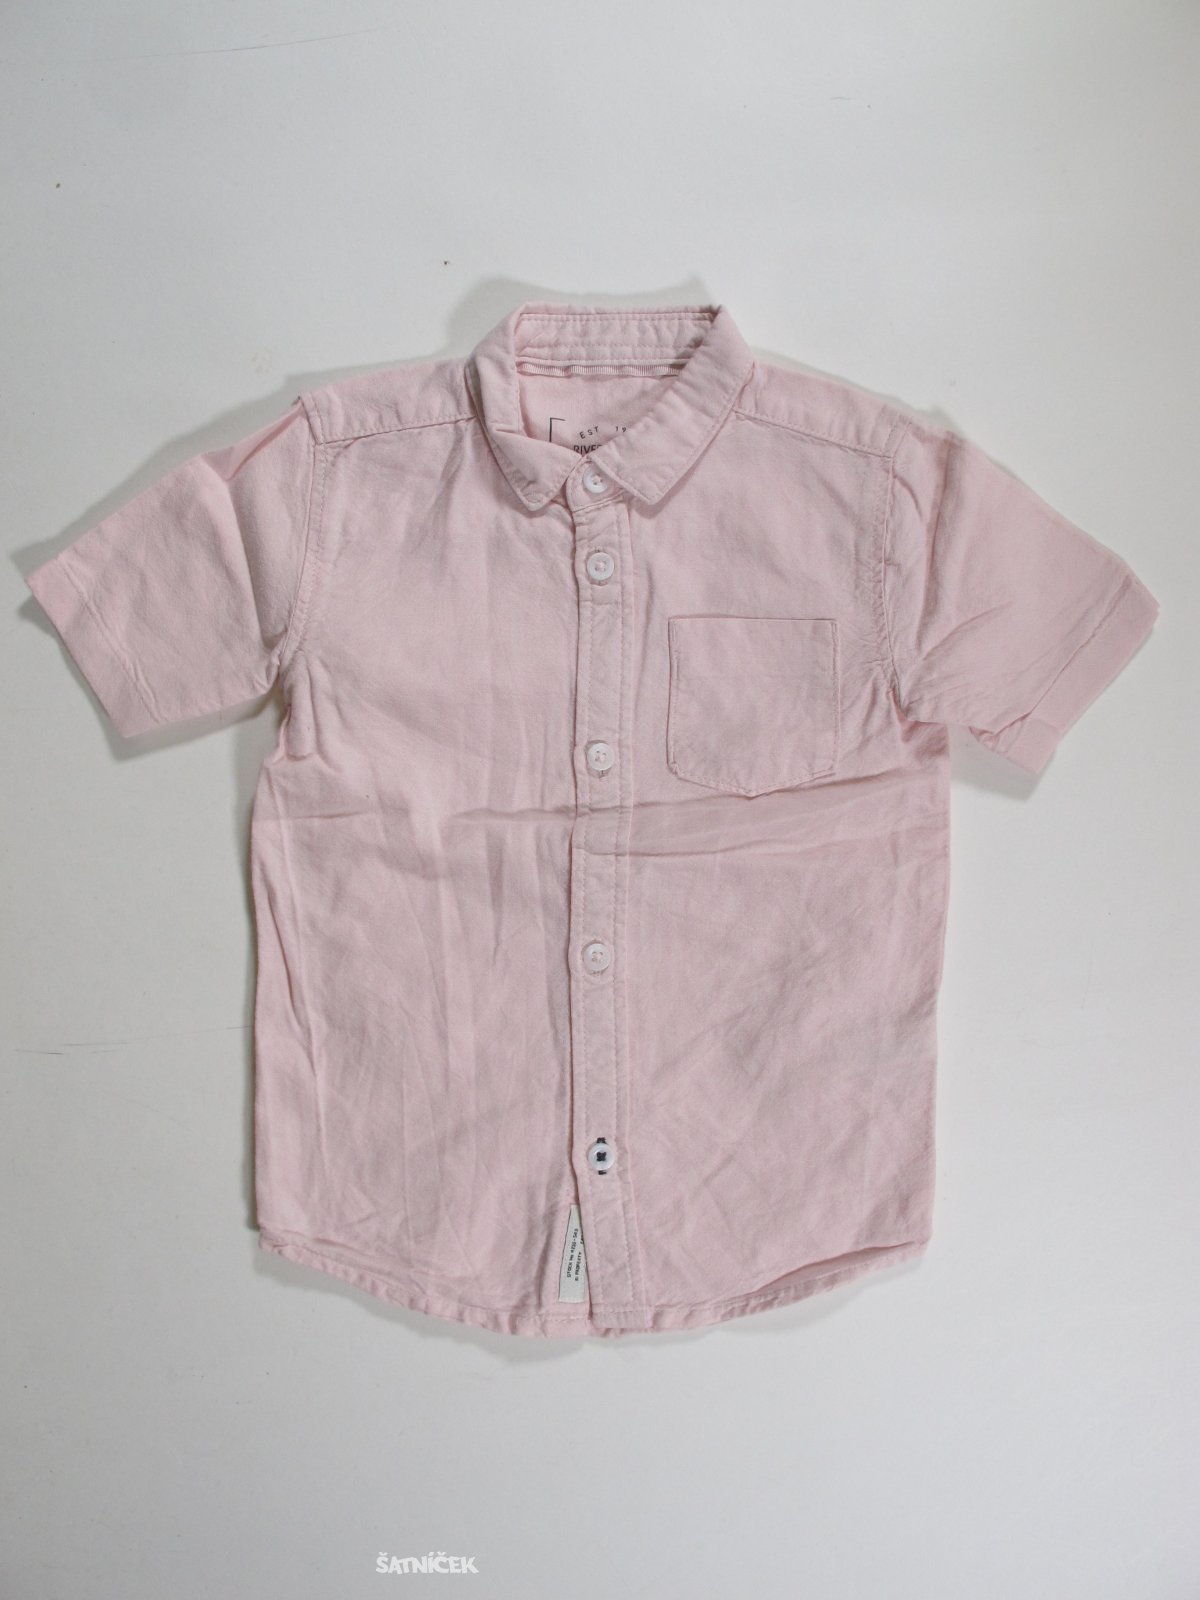 Košile pro kluky sv růžové scondhand